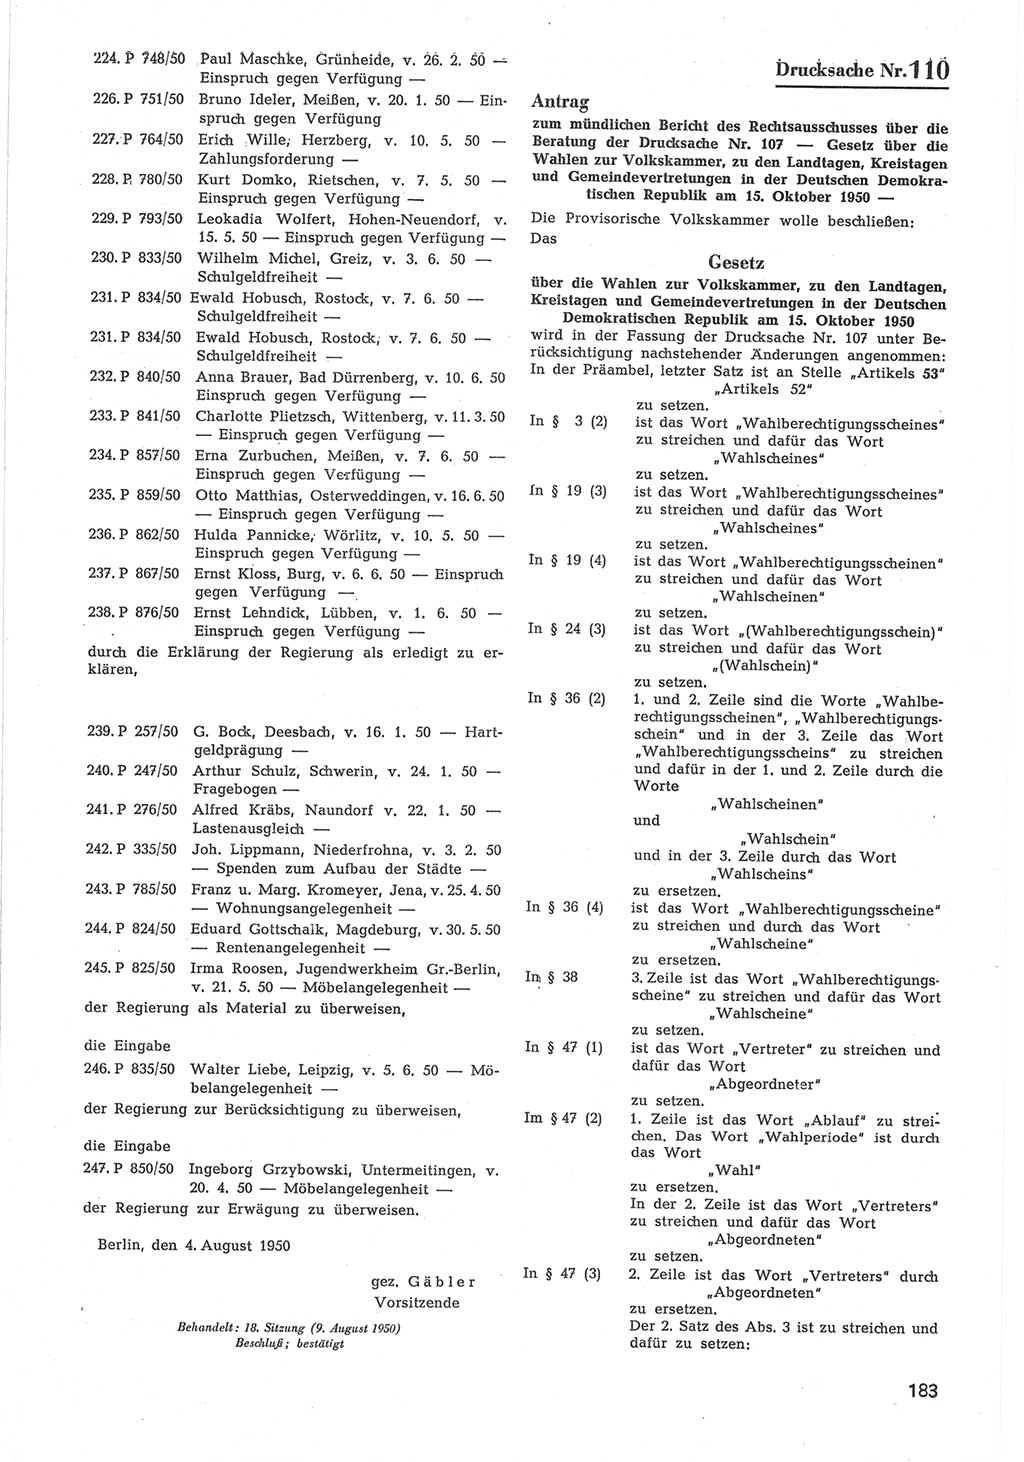 Provisorische Volkskammer (VK) der Deutschen Demokratischen Republik (DDR) 1949-1950, Dokument 785 (Prov. VK DDR 1949-1950, Dok. 785)